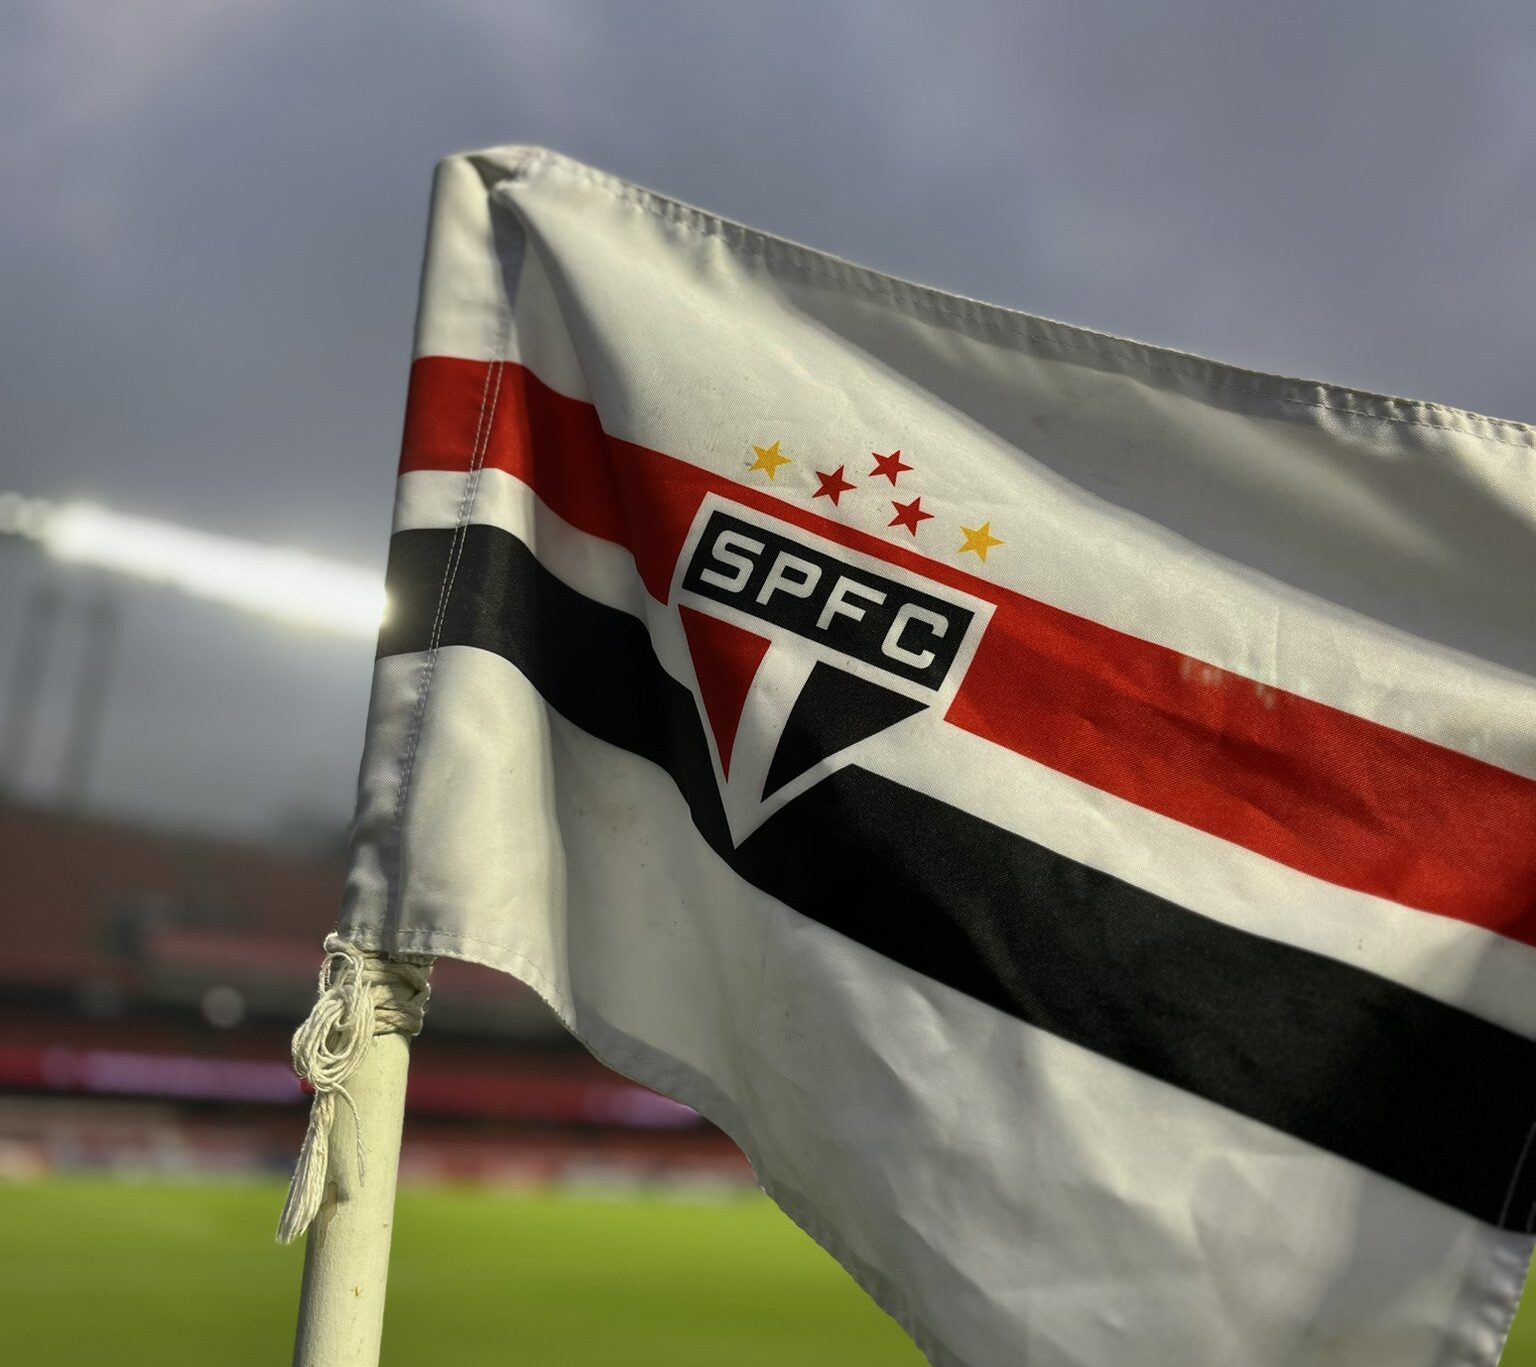 Sao Paulo bandeira e1712845943845